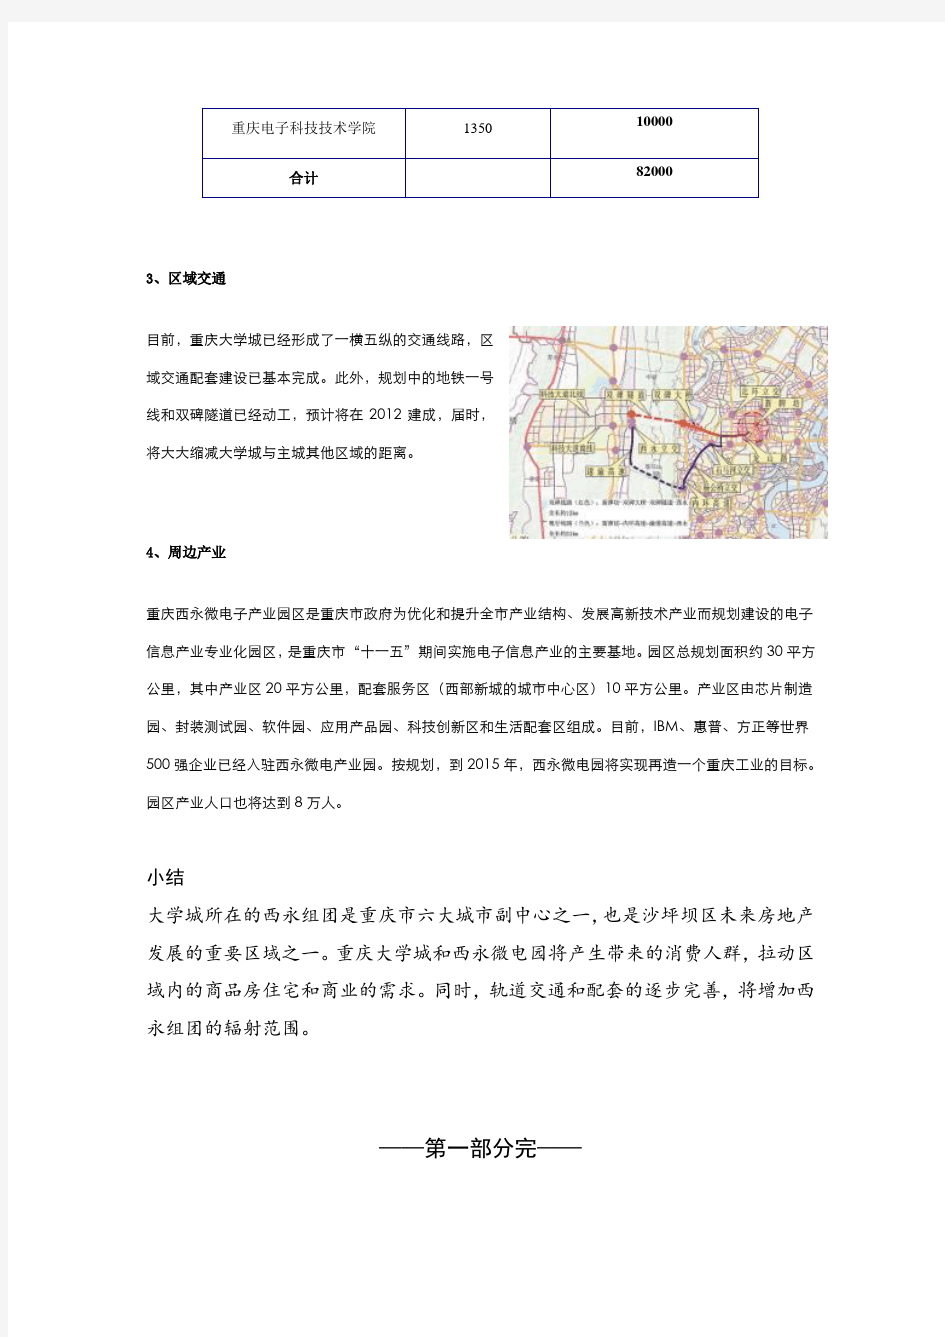 重庆大学城商业调查报告